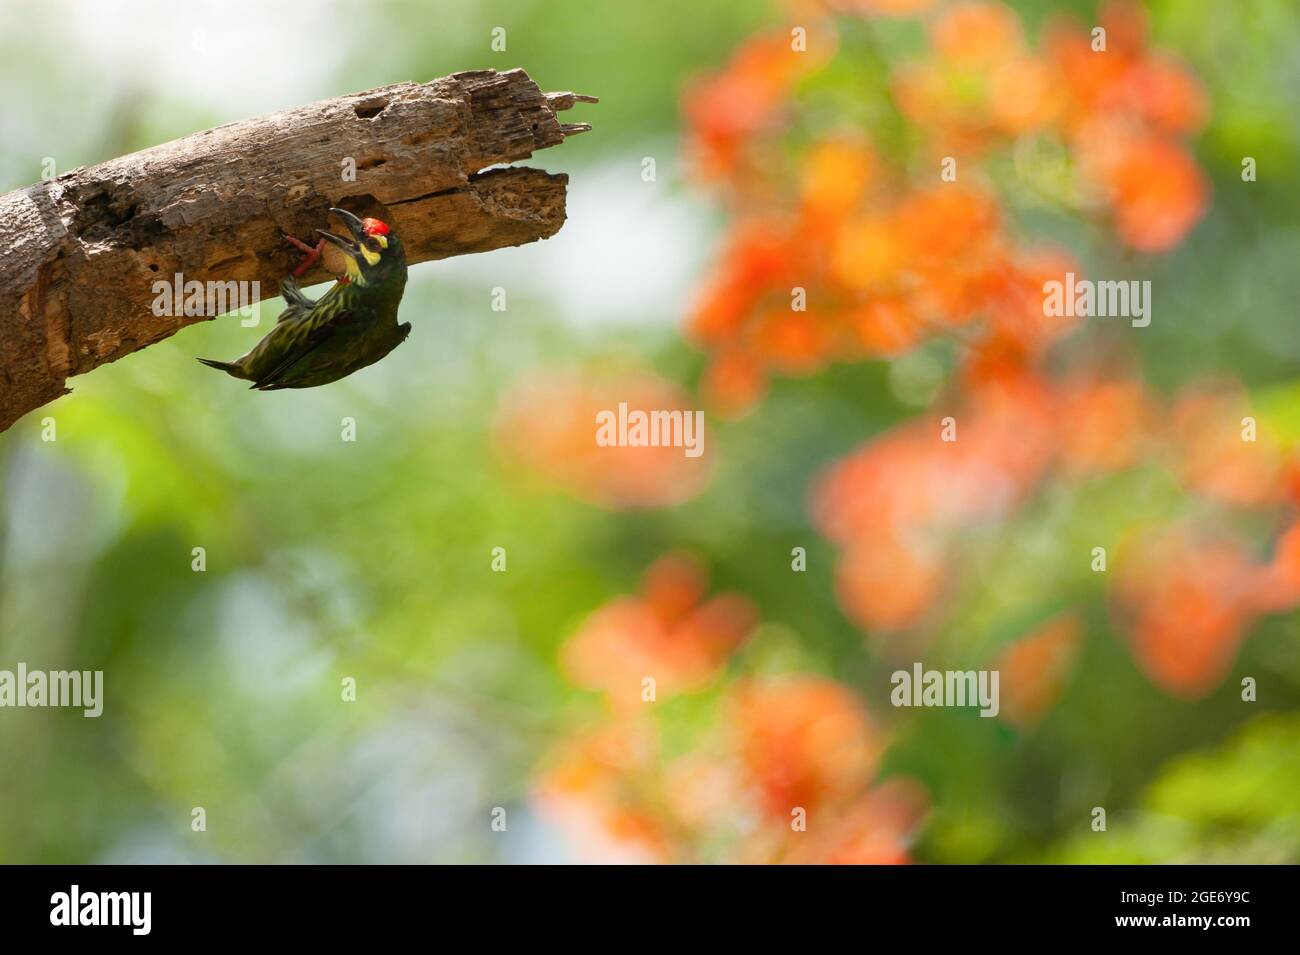 Un barbet Coppersmith selezionare con attenzione una cavità di albero per il loro nido in un giardino. I fiori colorati delonix regia sono in fiore sfocati negli sfondi Foto Stock